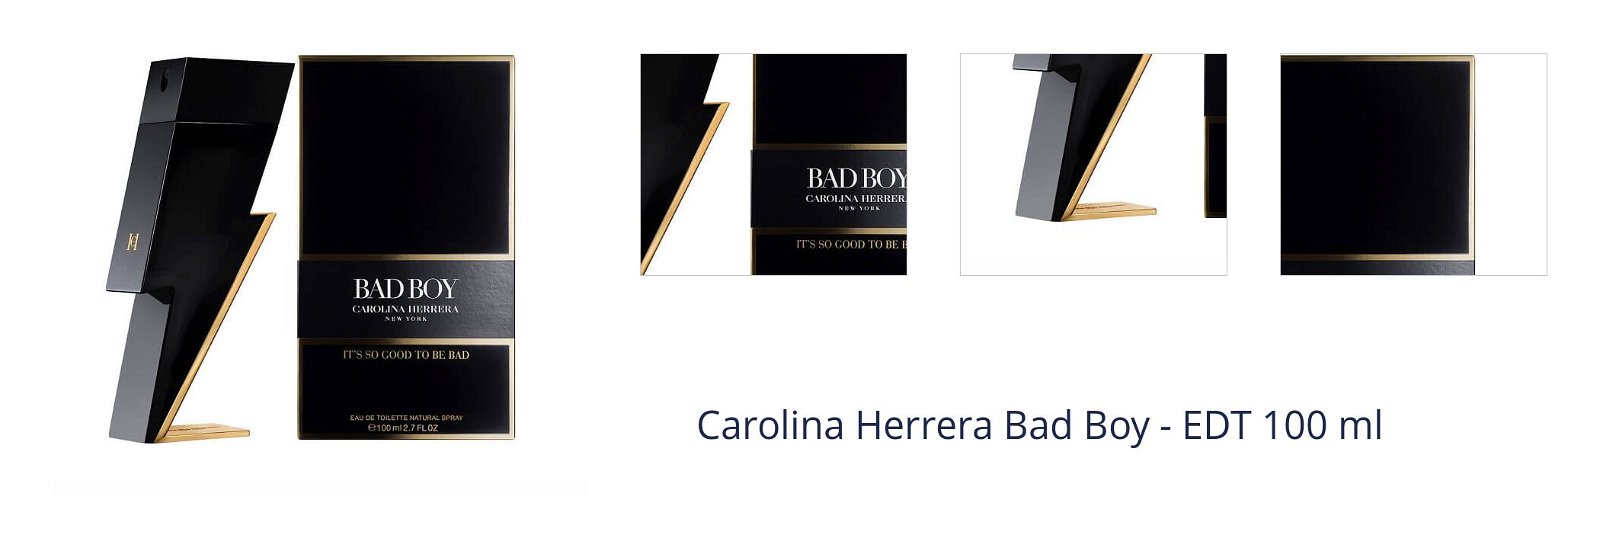 Carolina Herrera Bad Boy - EDT 100 ml 1